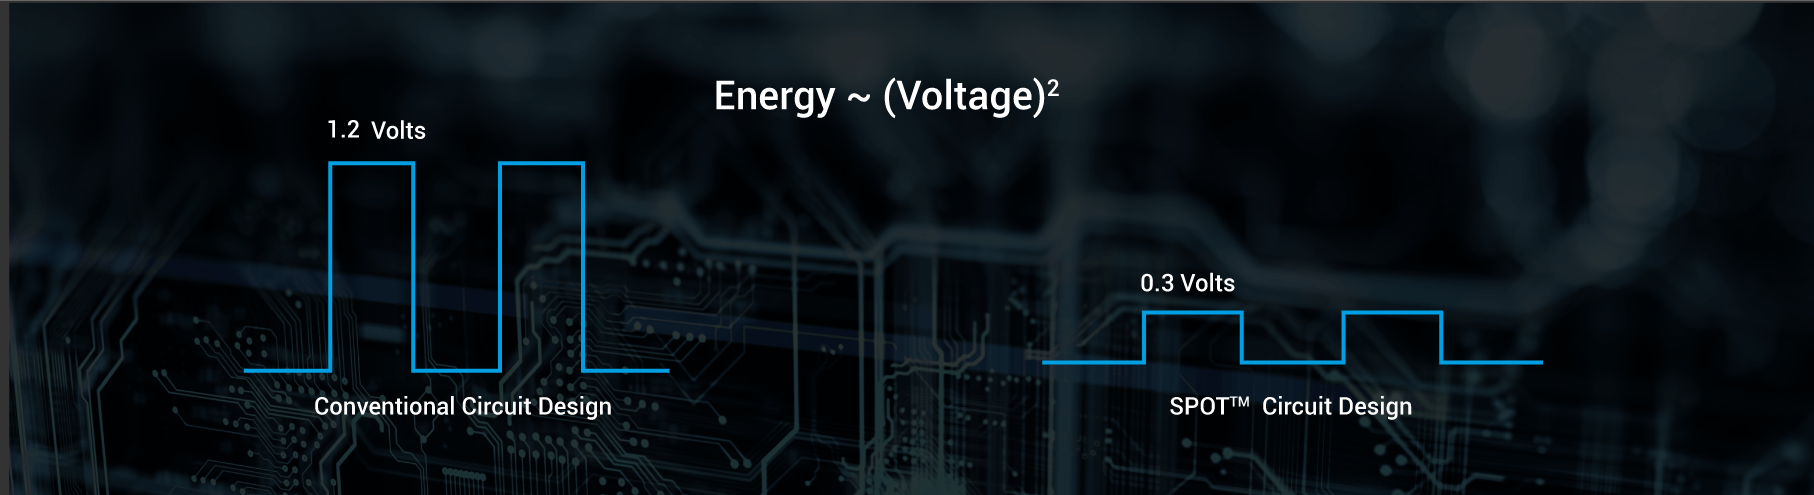 Energy (Voltage)